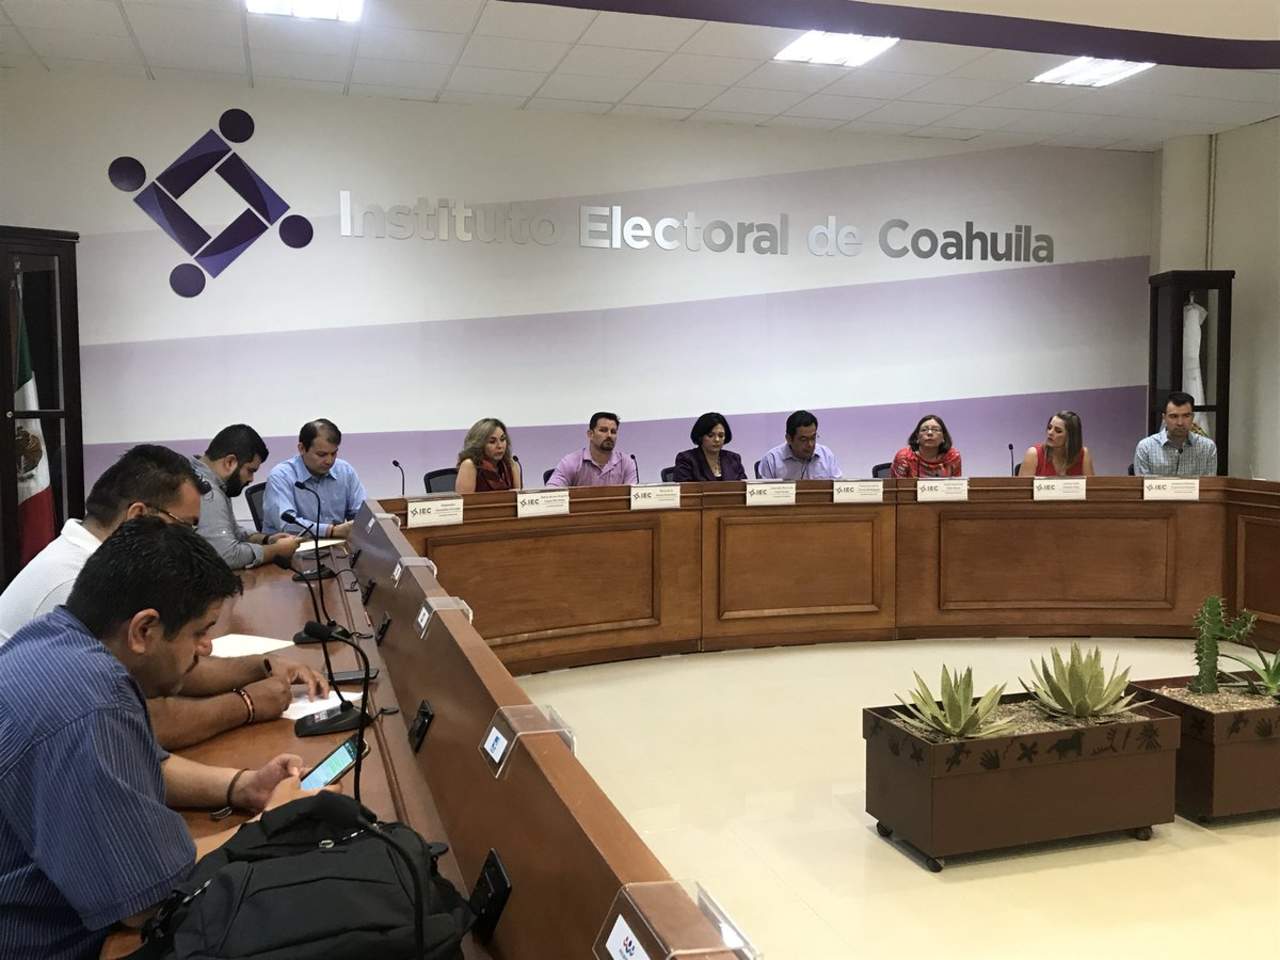 Fue el sábado cuando los aspirantes presentaron el Examen Técnico Electoral y de Conocimientos Básicos en las instalaciones de la Universidad Autónoma de Coahuila (UAdeC), Campus Arteaga. (ARCHIVO)